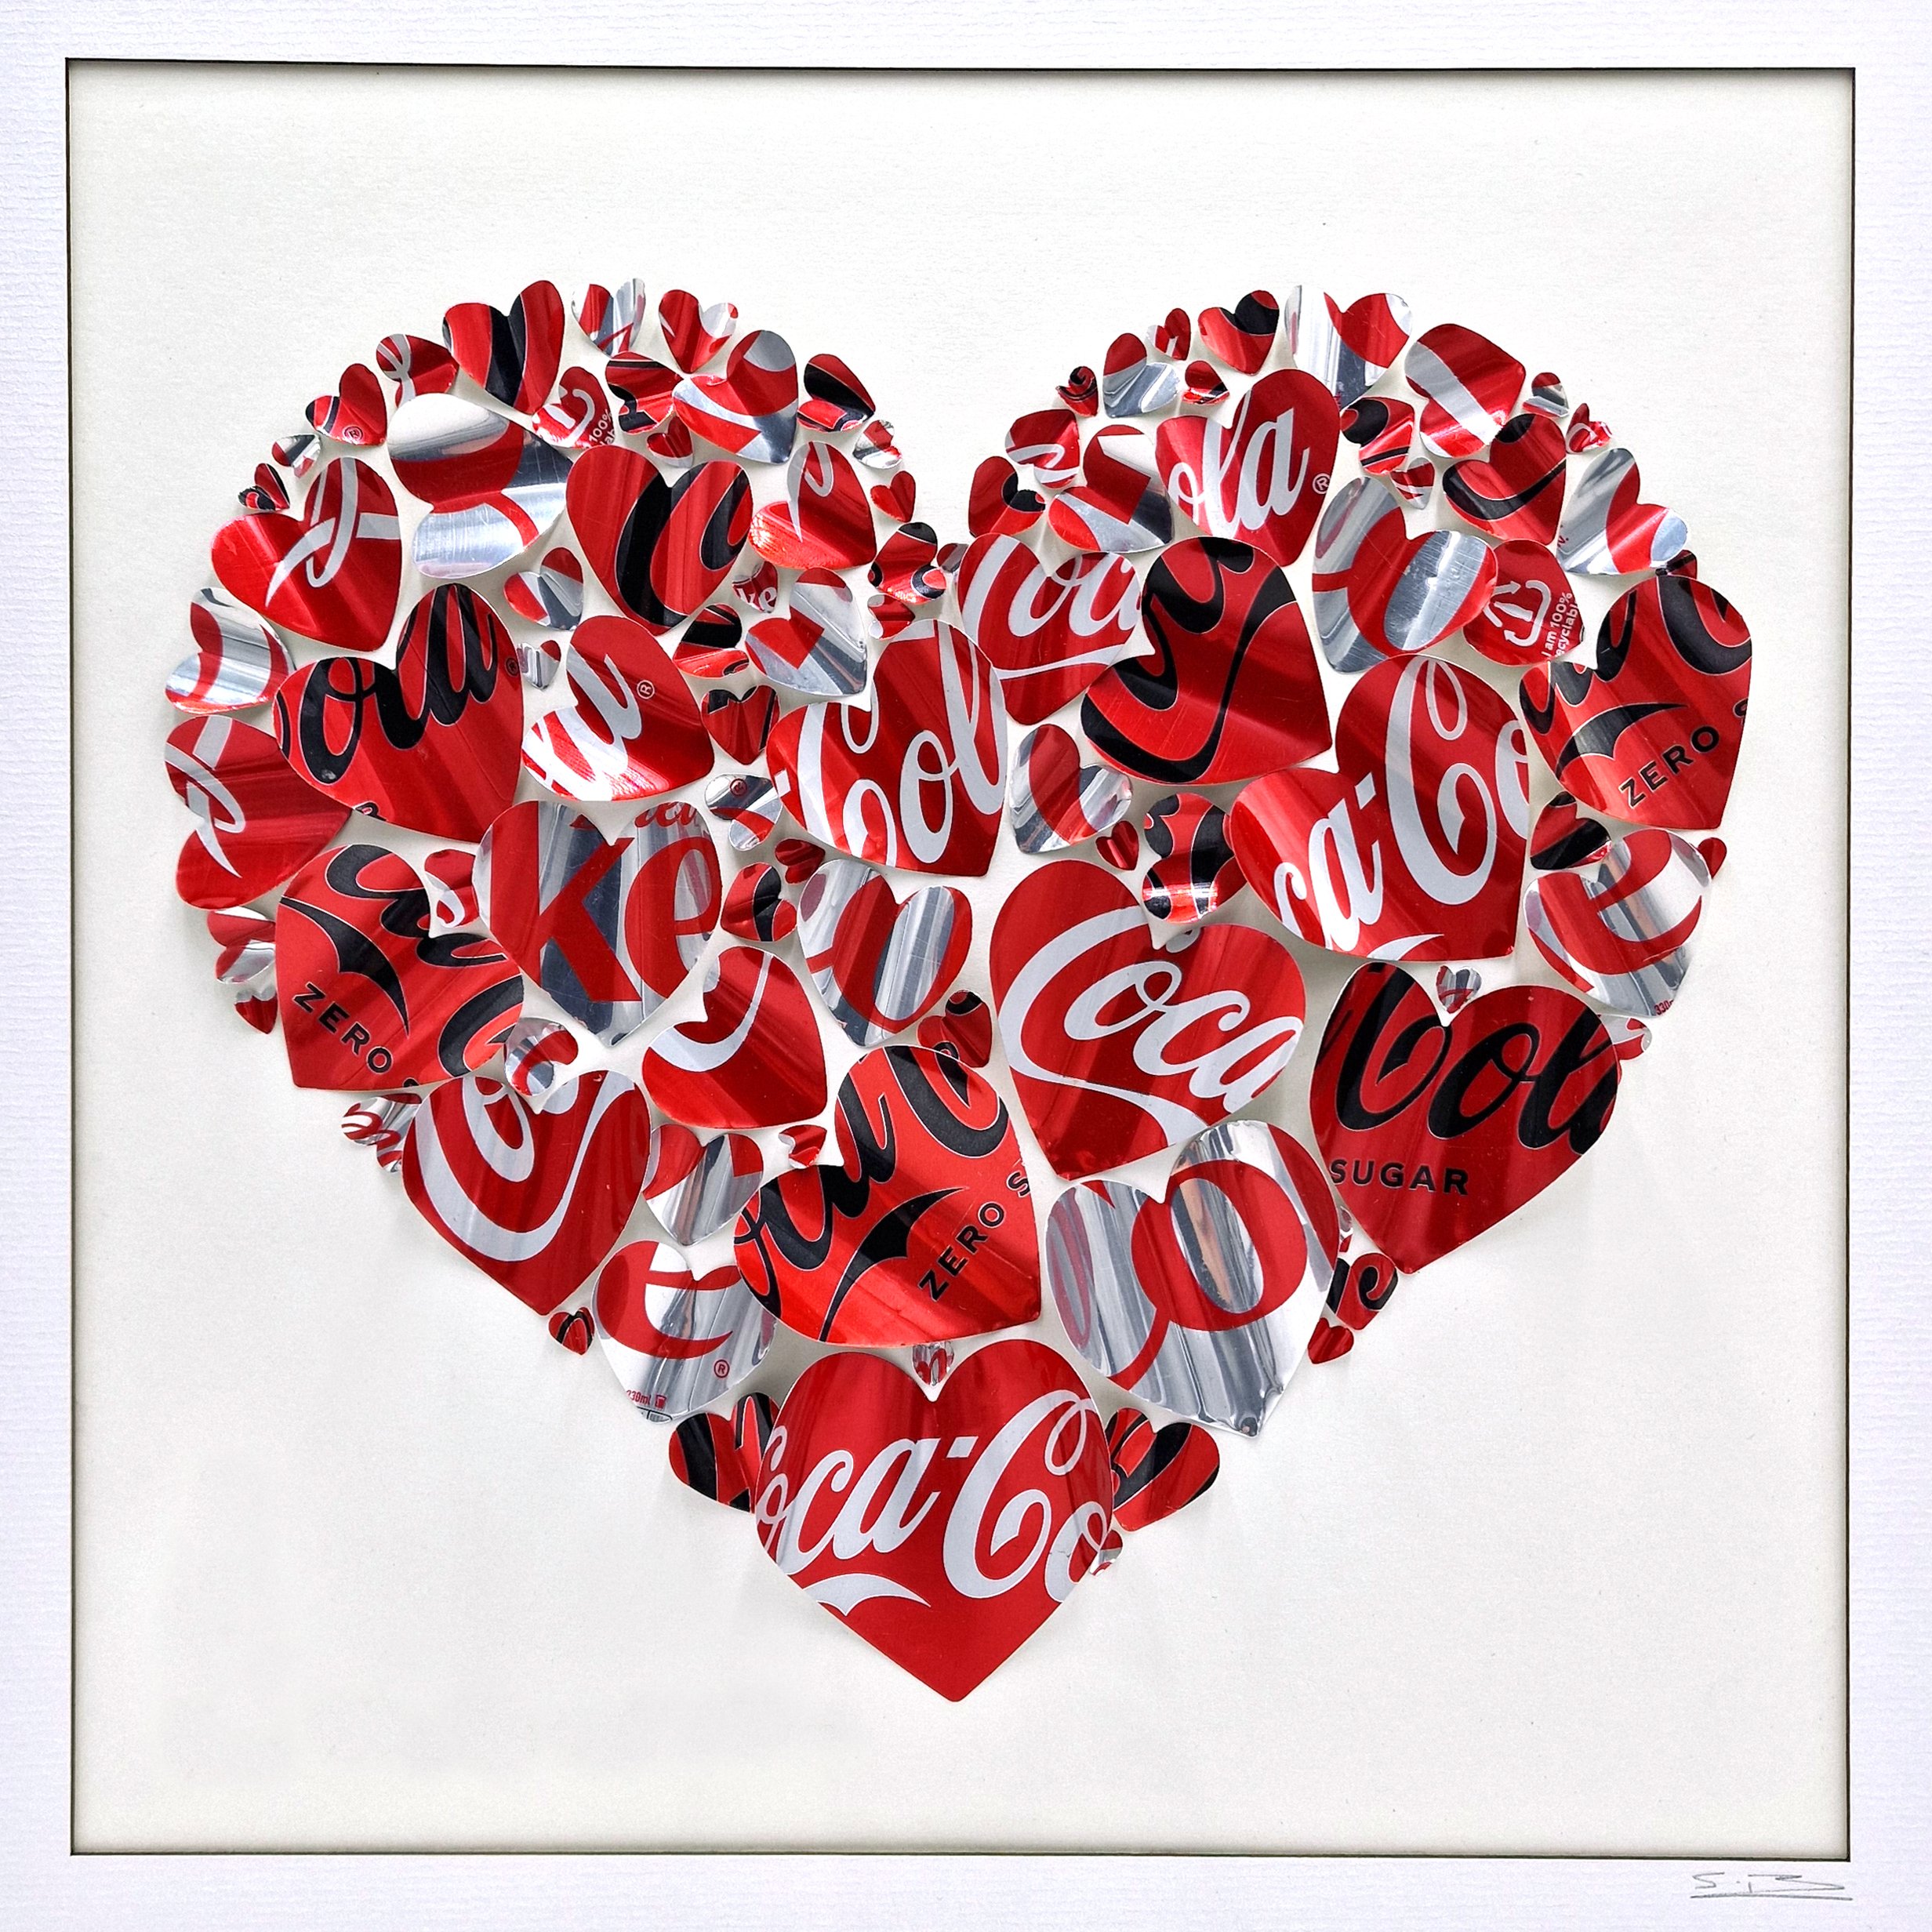 Coca-Cola Diet Coke and Coke Zero Hearts Close Up 1.jpg